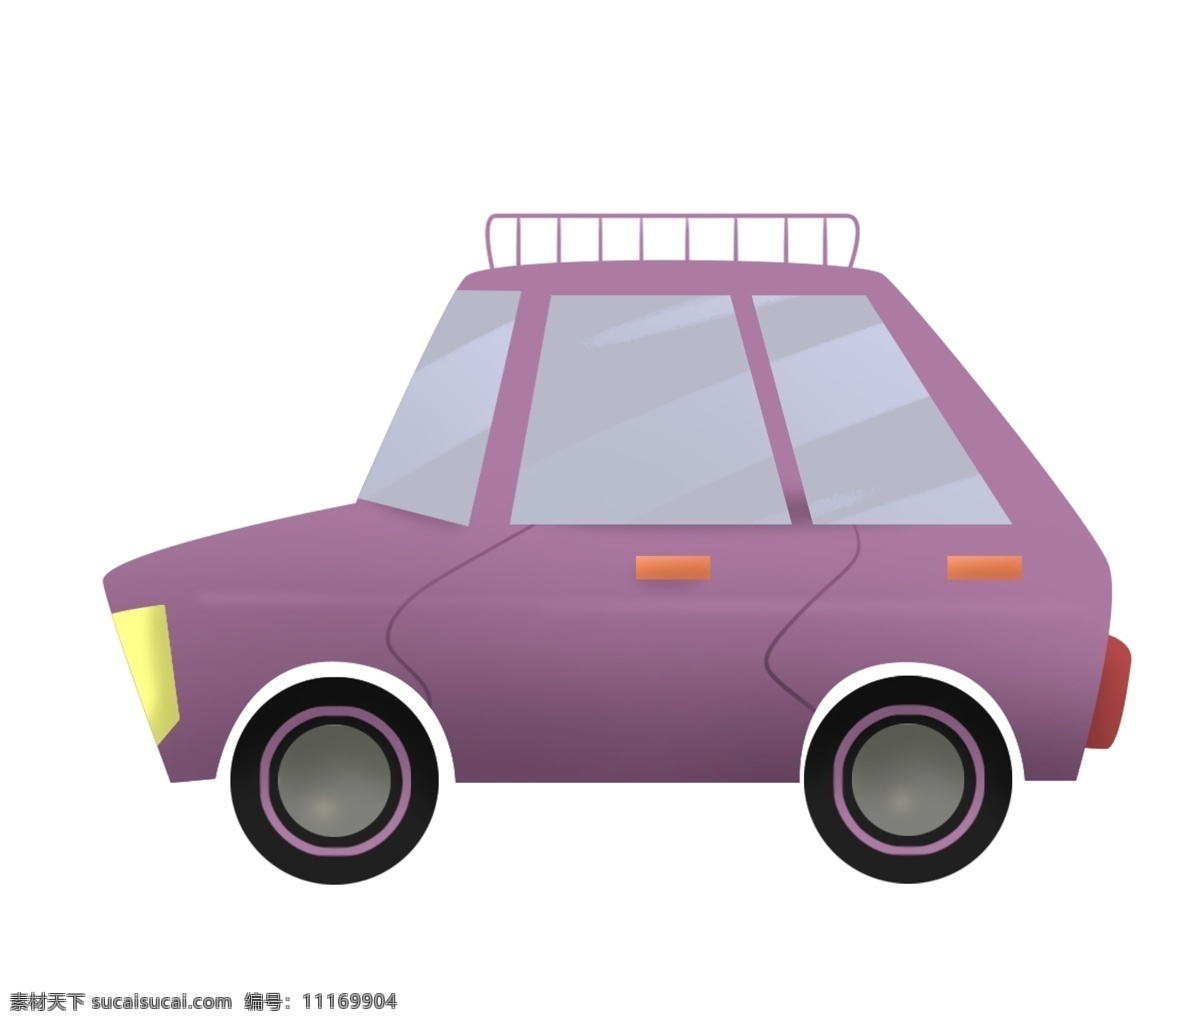 紫色 旅游 小汽车 插画 紫色的汽车 旅游小汽车 舒适性 行使 豪车插画 自驾游 旅行 交通汽车